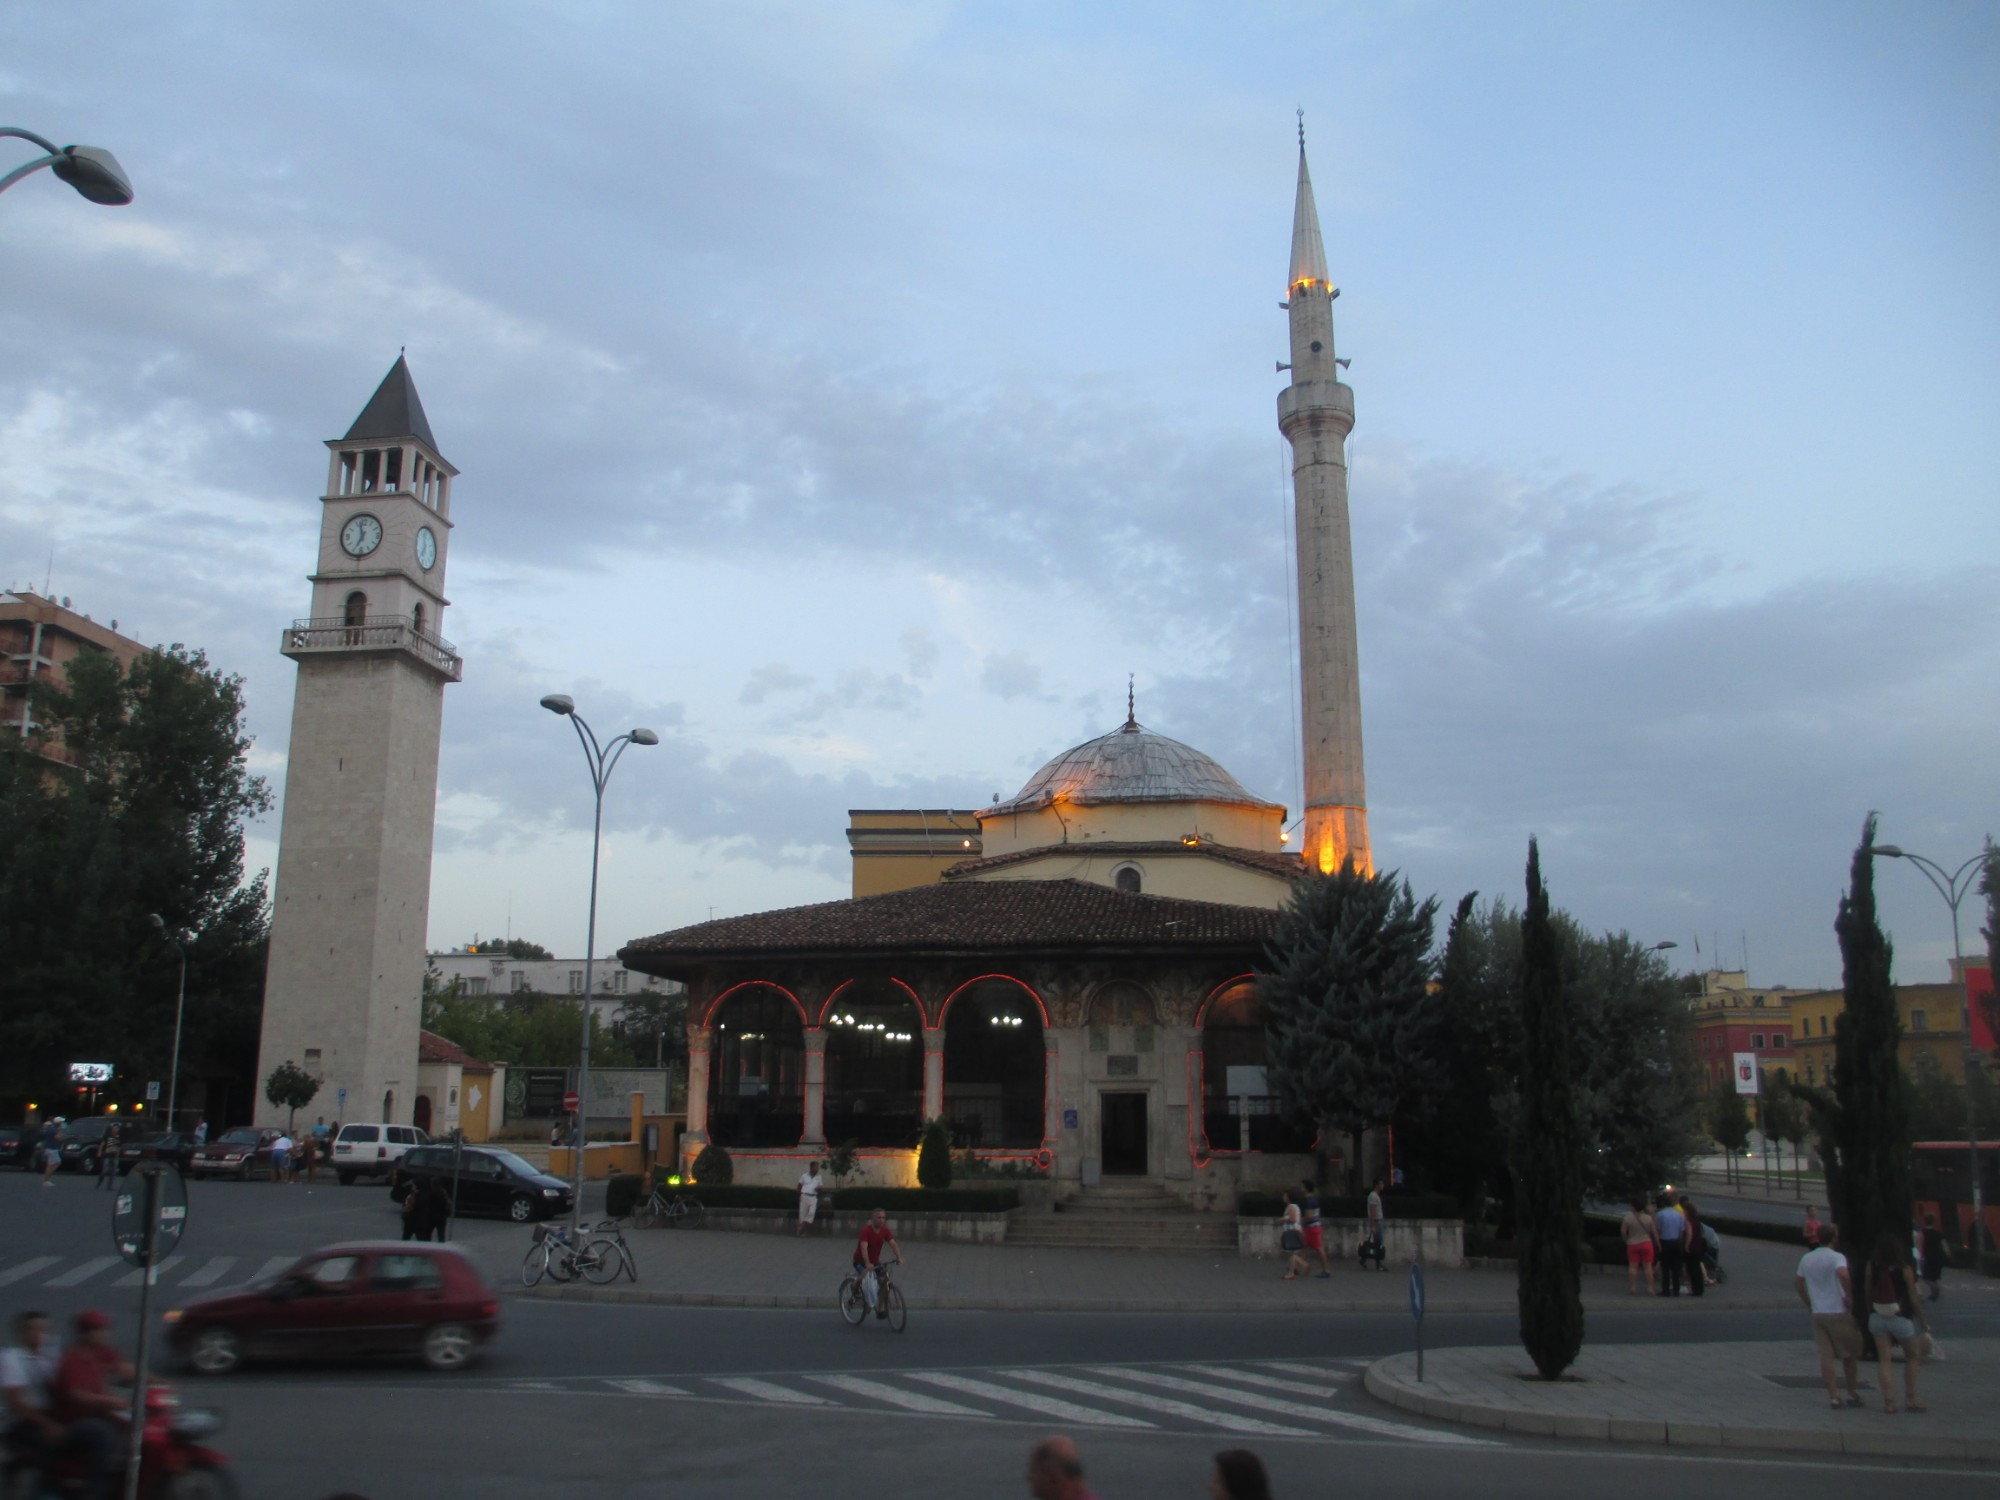 Тирана. Мечеть Эфем-бея и часовая башня. (05.09.2015)